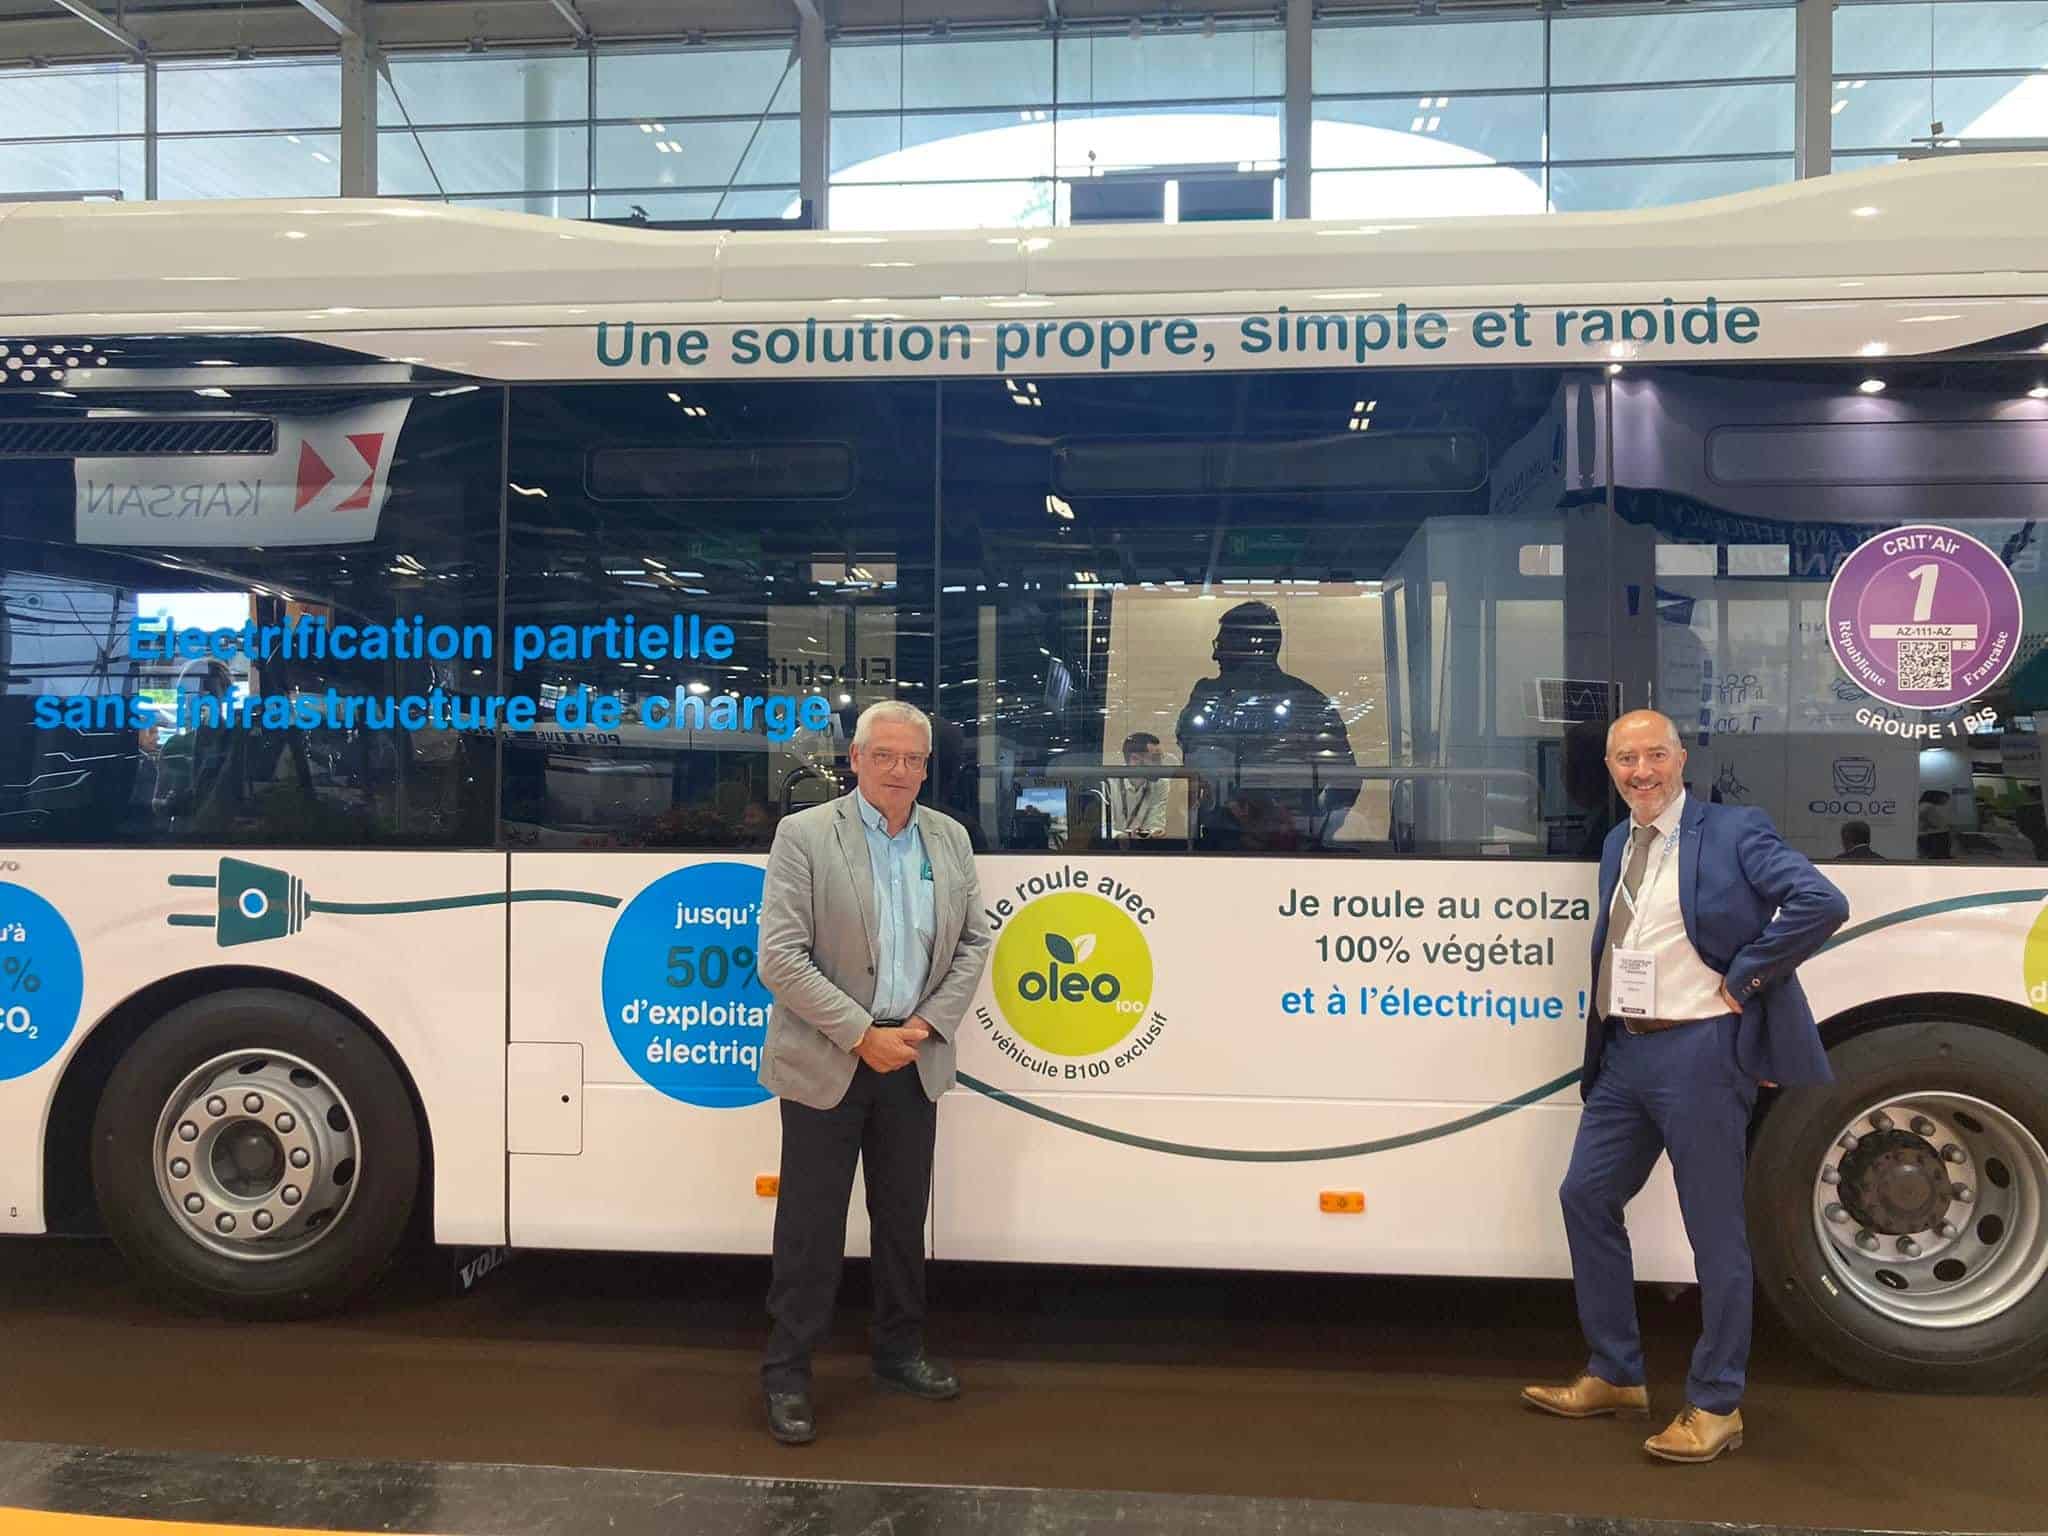 Agglo Hérault Méditerranée transports mobilité bus réseau cap bus salon europe expo paris versailles